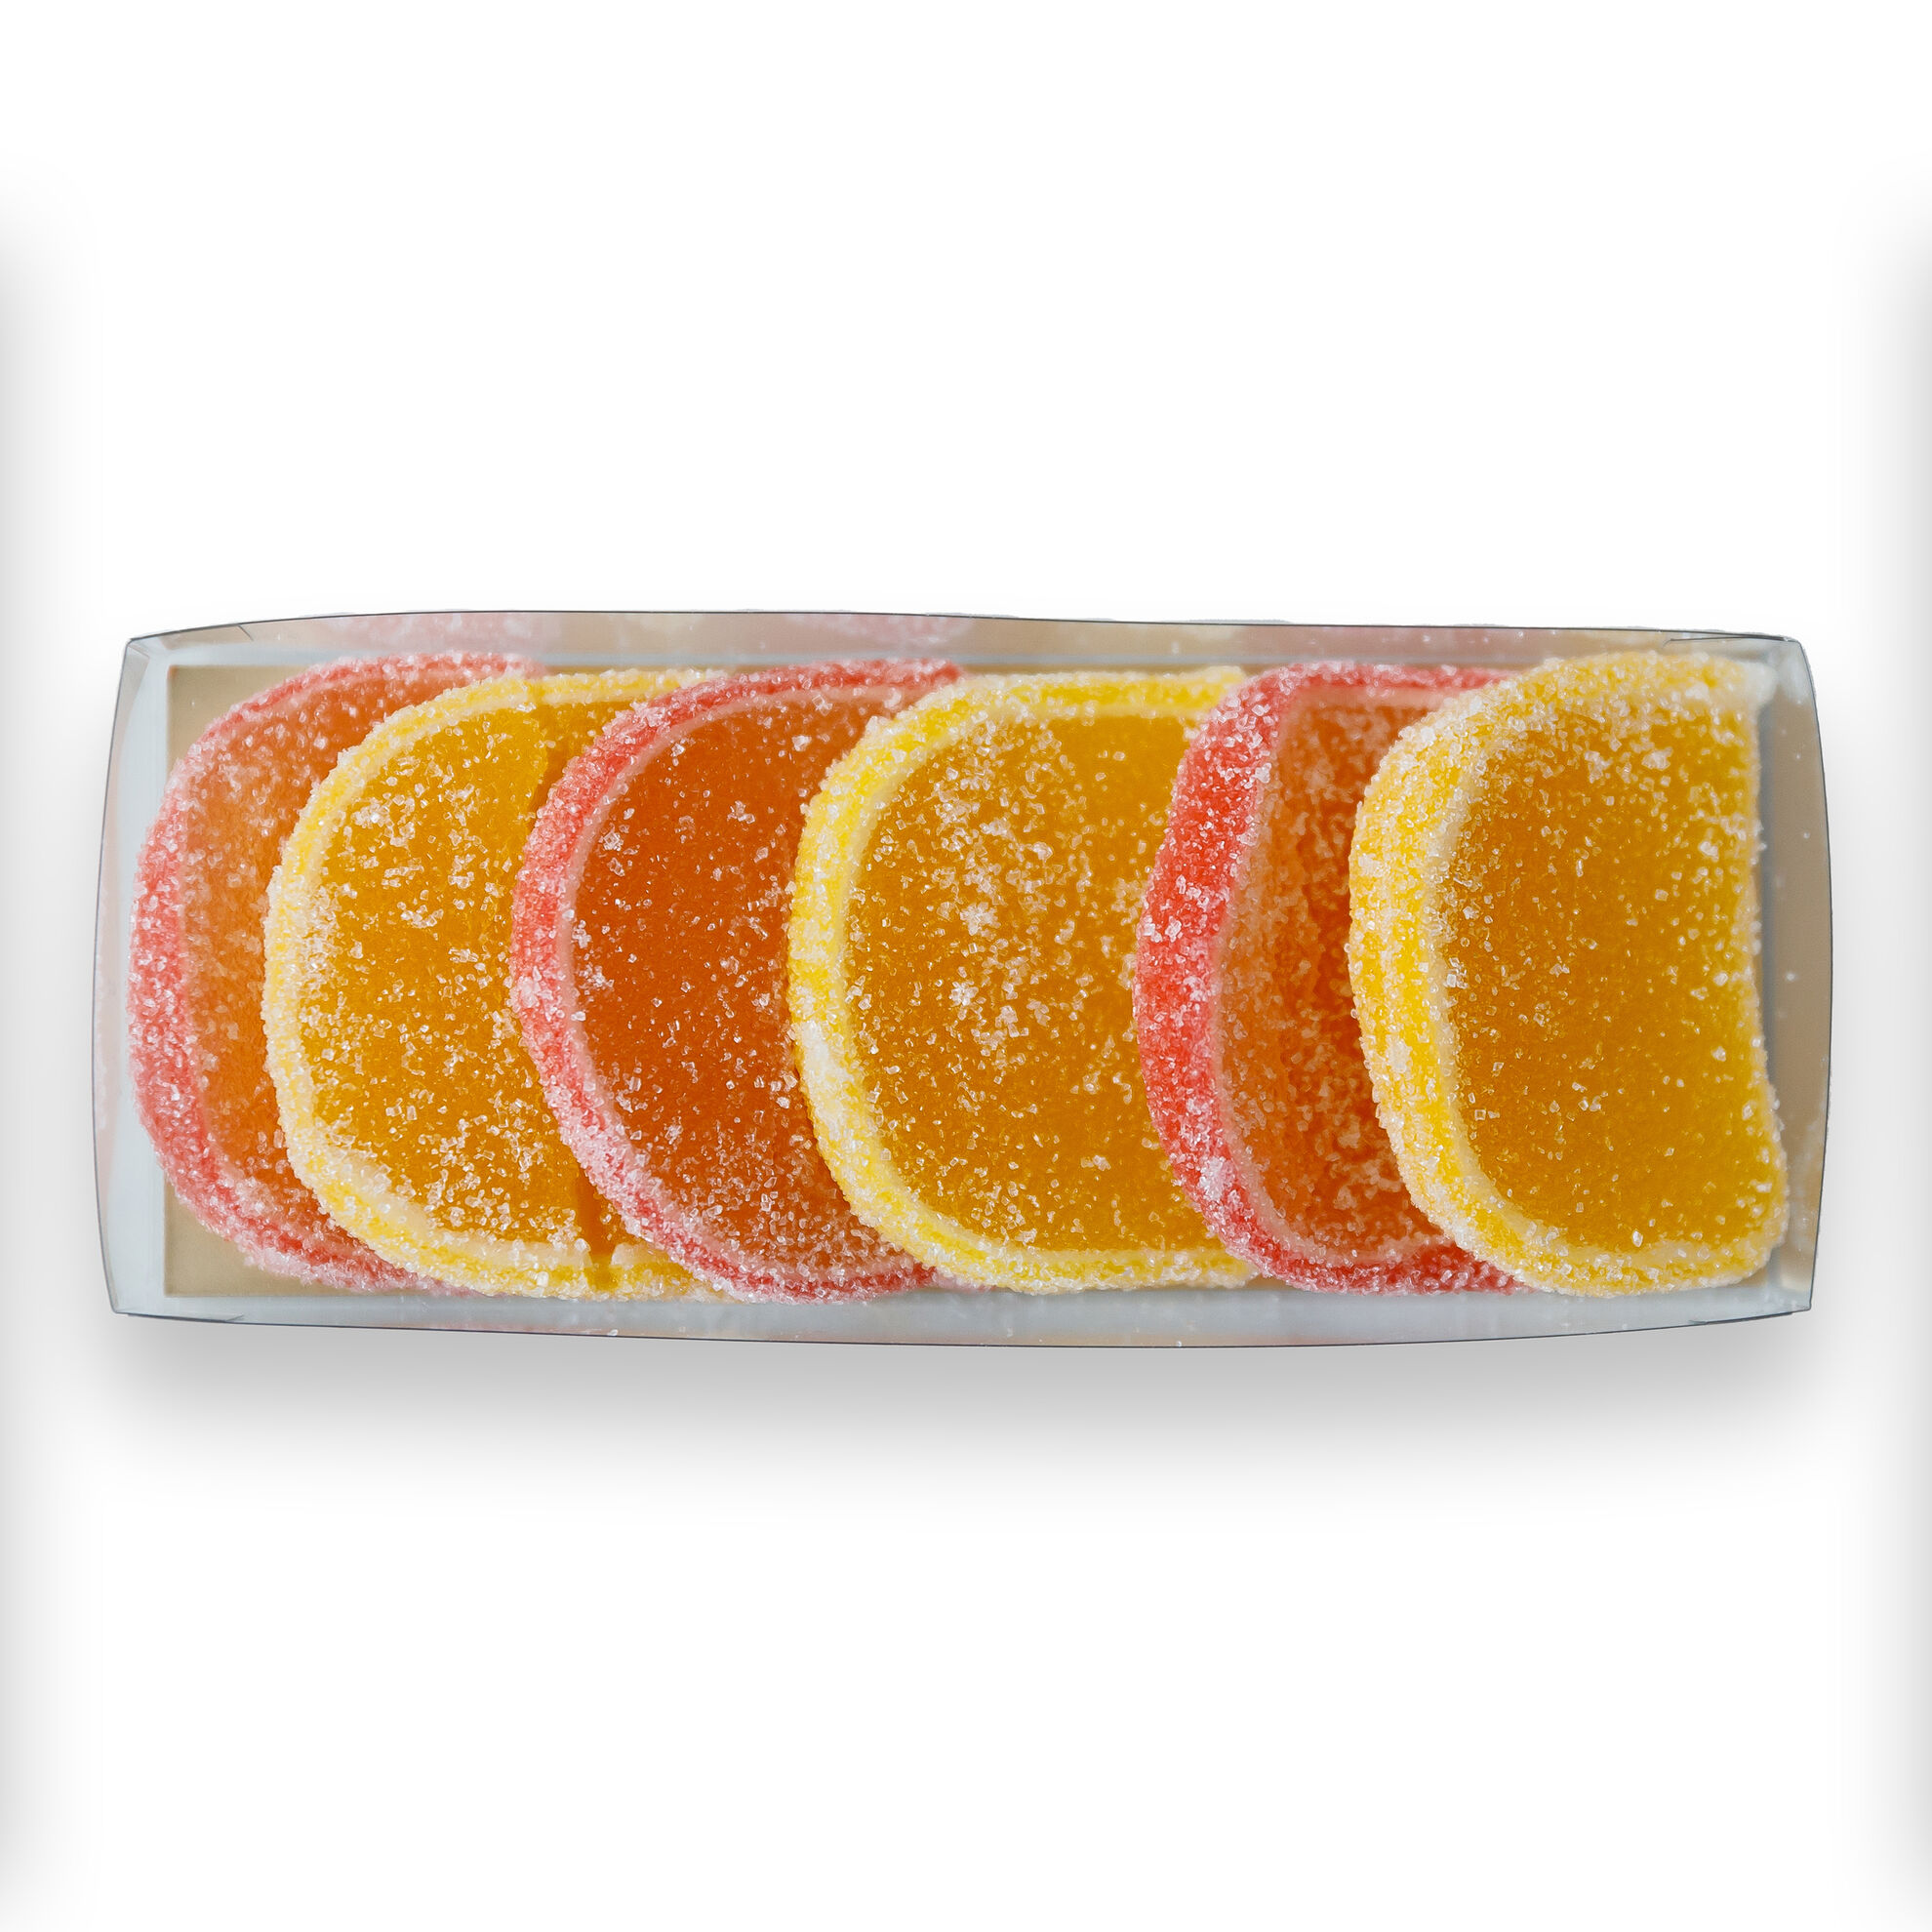 Pâté de Fruits - Lemon & Orange Fruit Slices image number 11